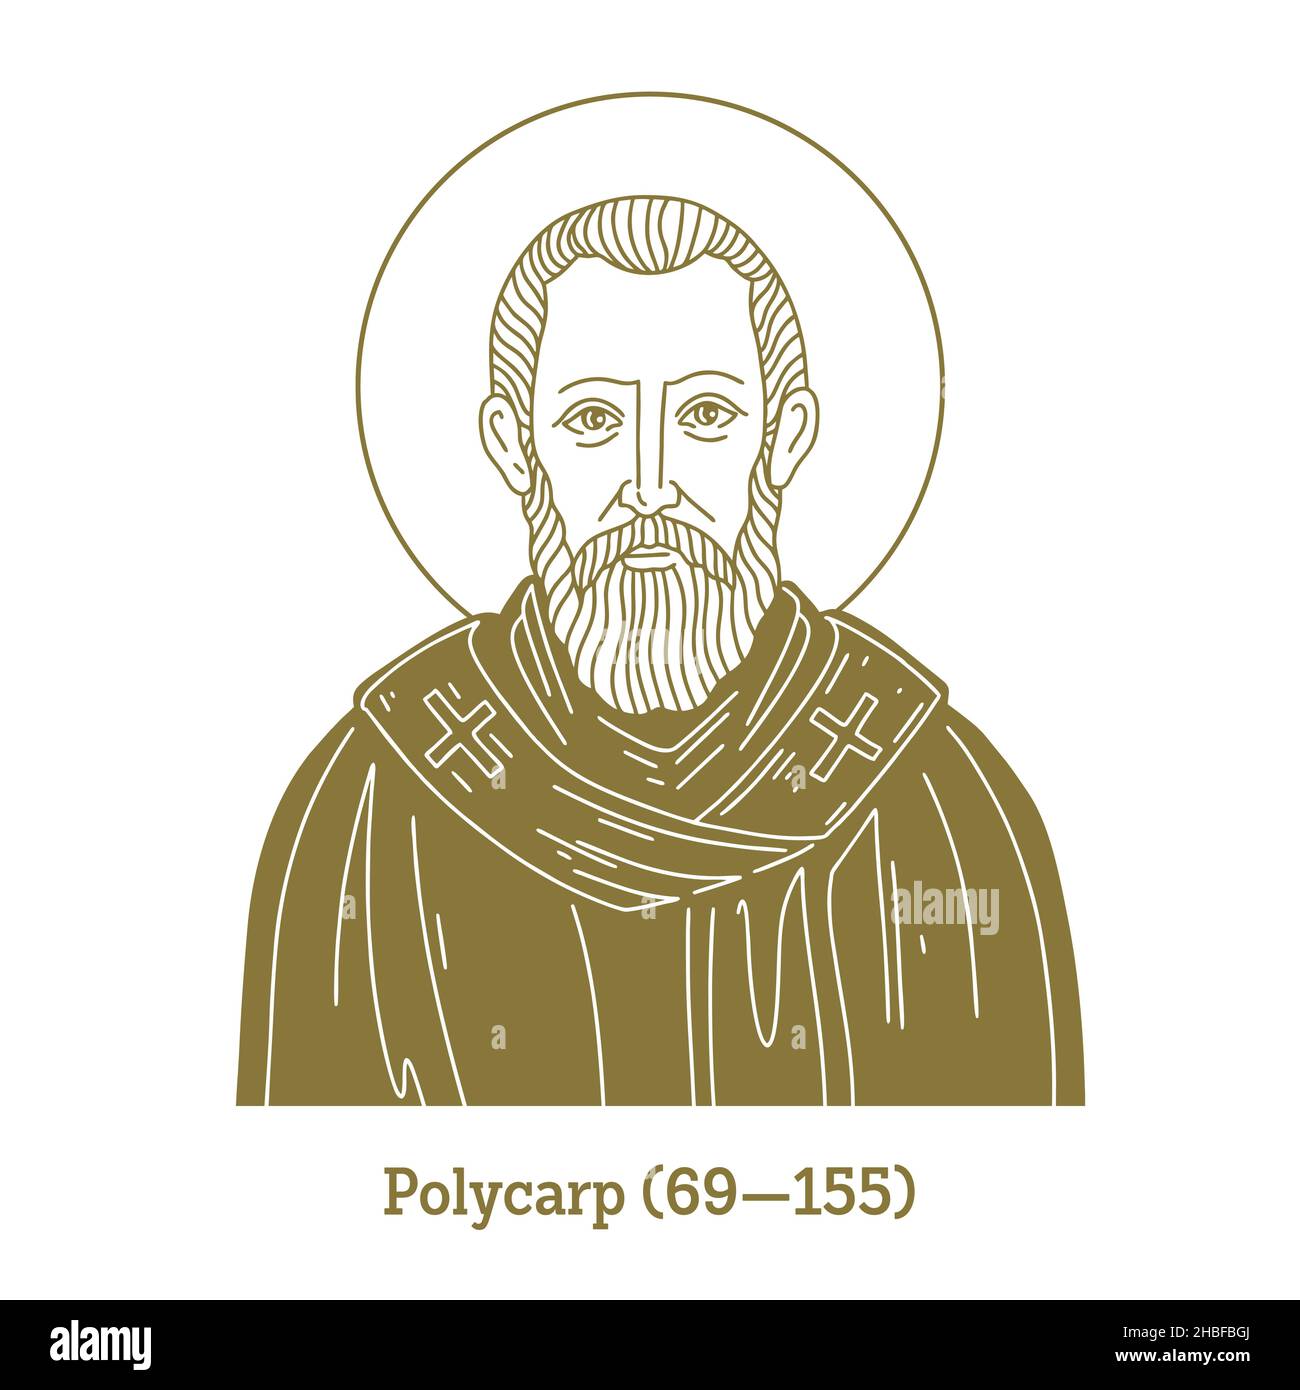 Polycarp (69-155) fu vescovo cristiano di Smyrna. Secondo il martirio di Polycarp, morì martire, legato e bruciato al palo Illustrazione Vettoriale